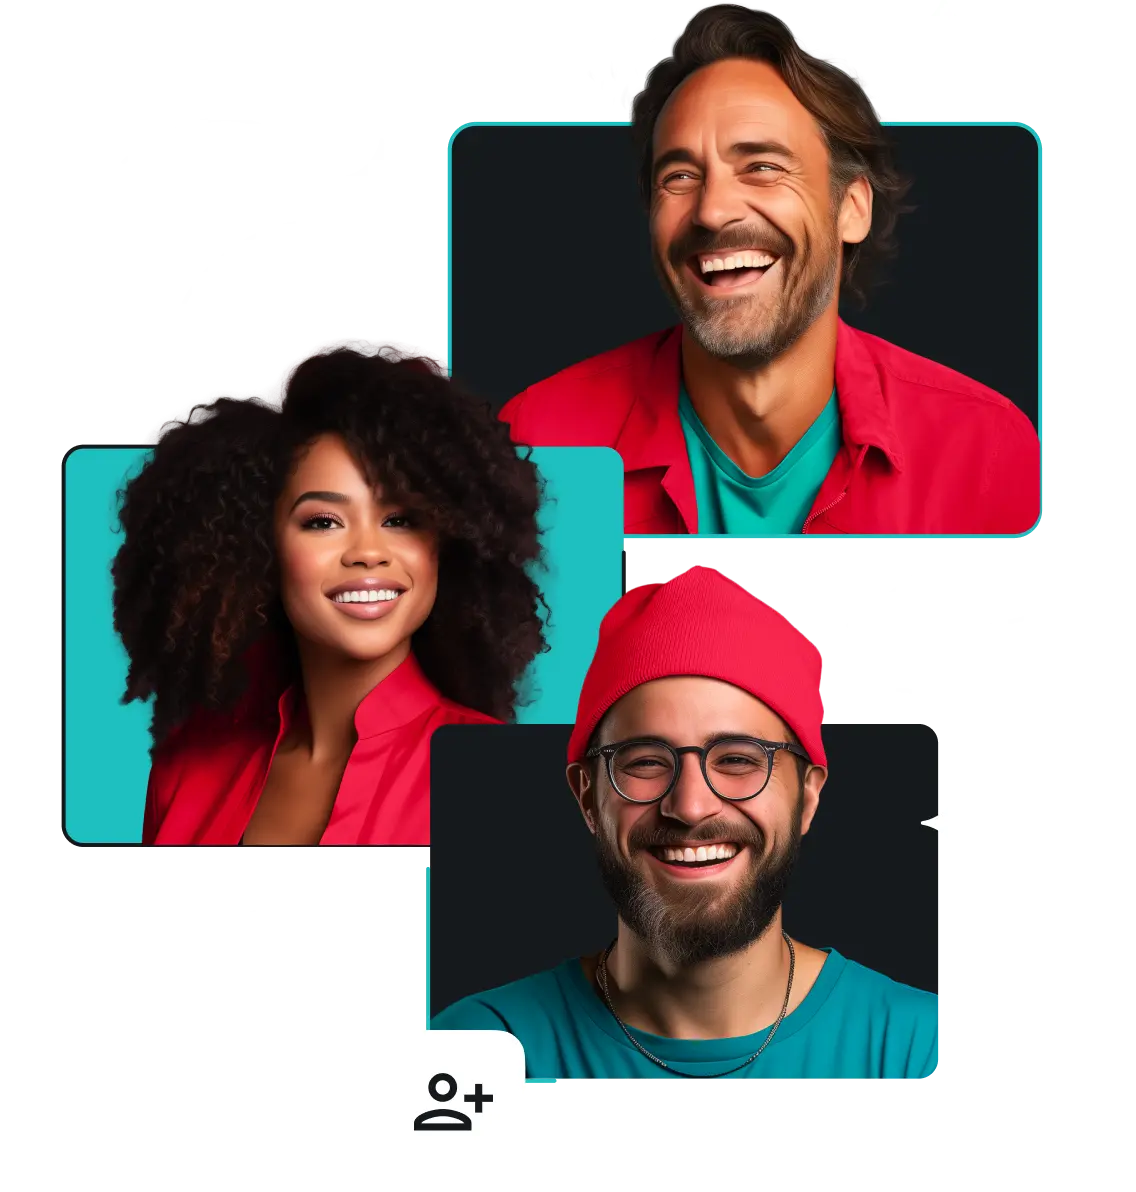 笑顔の男性2人と女性1人。男性の1人は赤いビニール帽をかぶり、眼鏡をかけている。